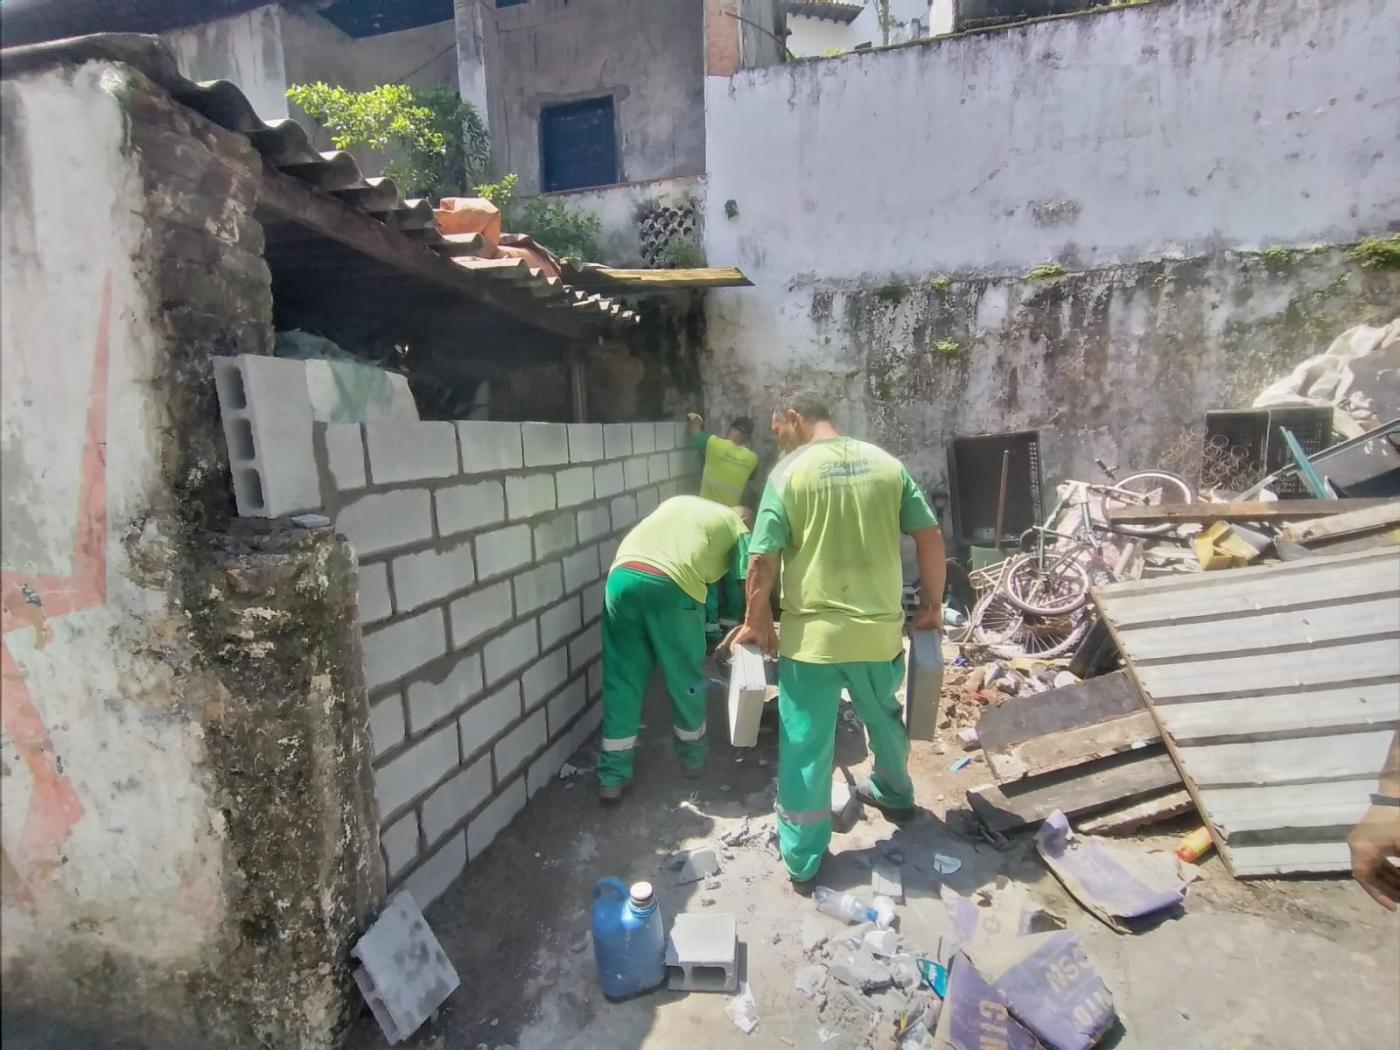 homens fecham entrada do imóvel com blocos de concreto #paratodosverem